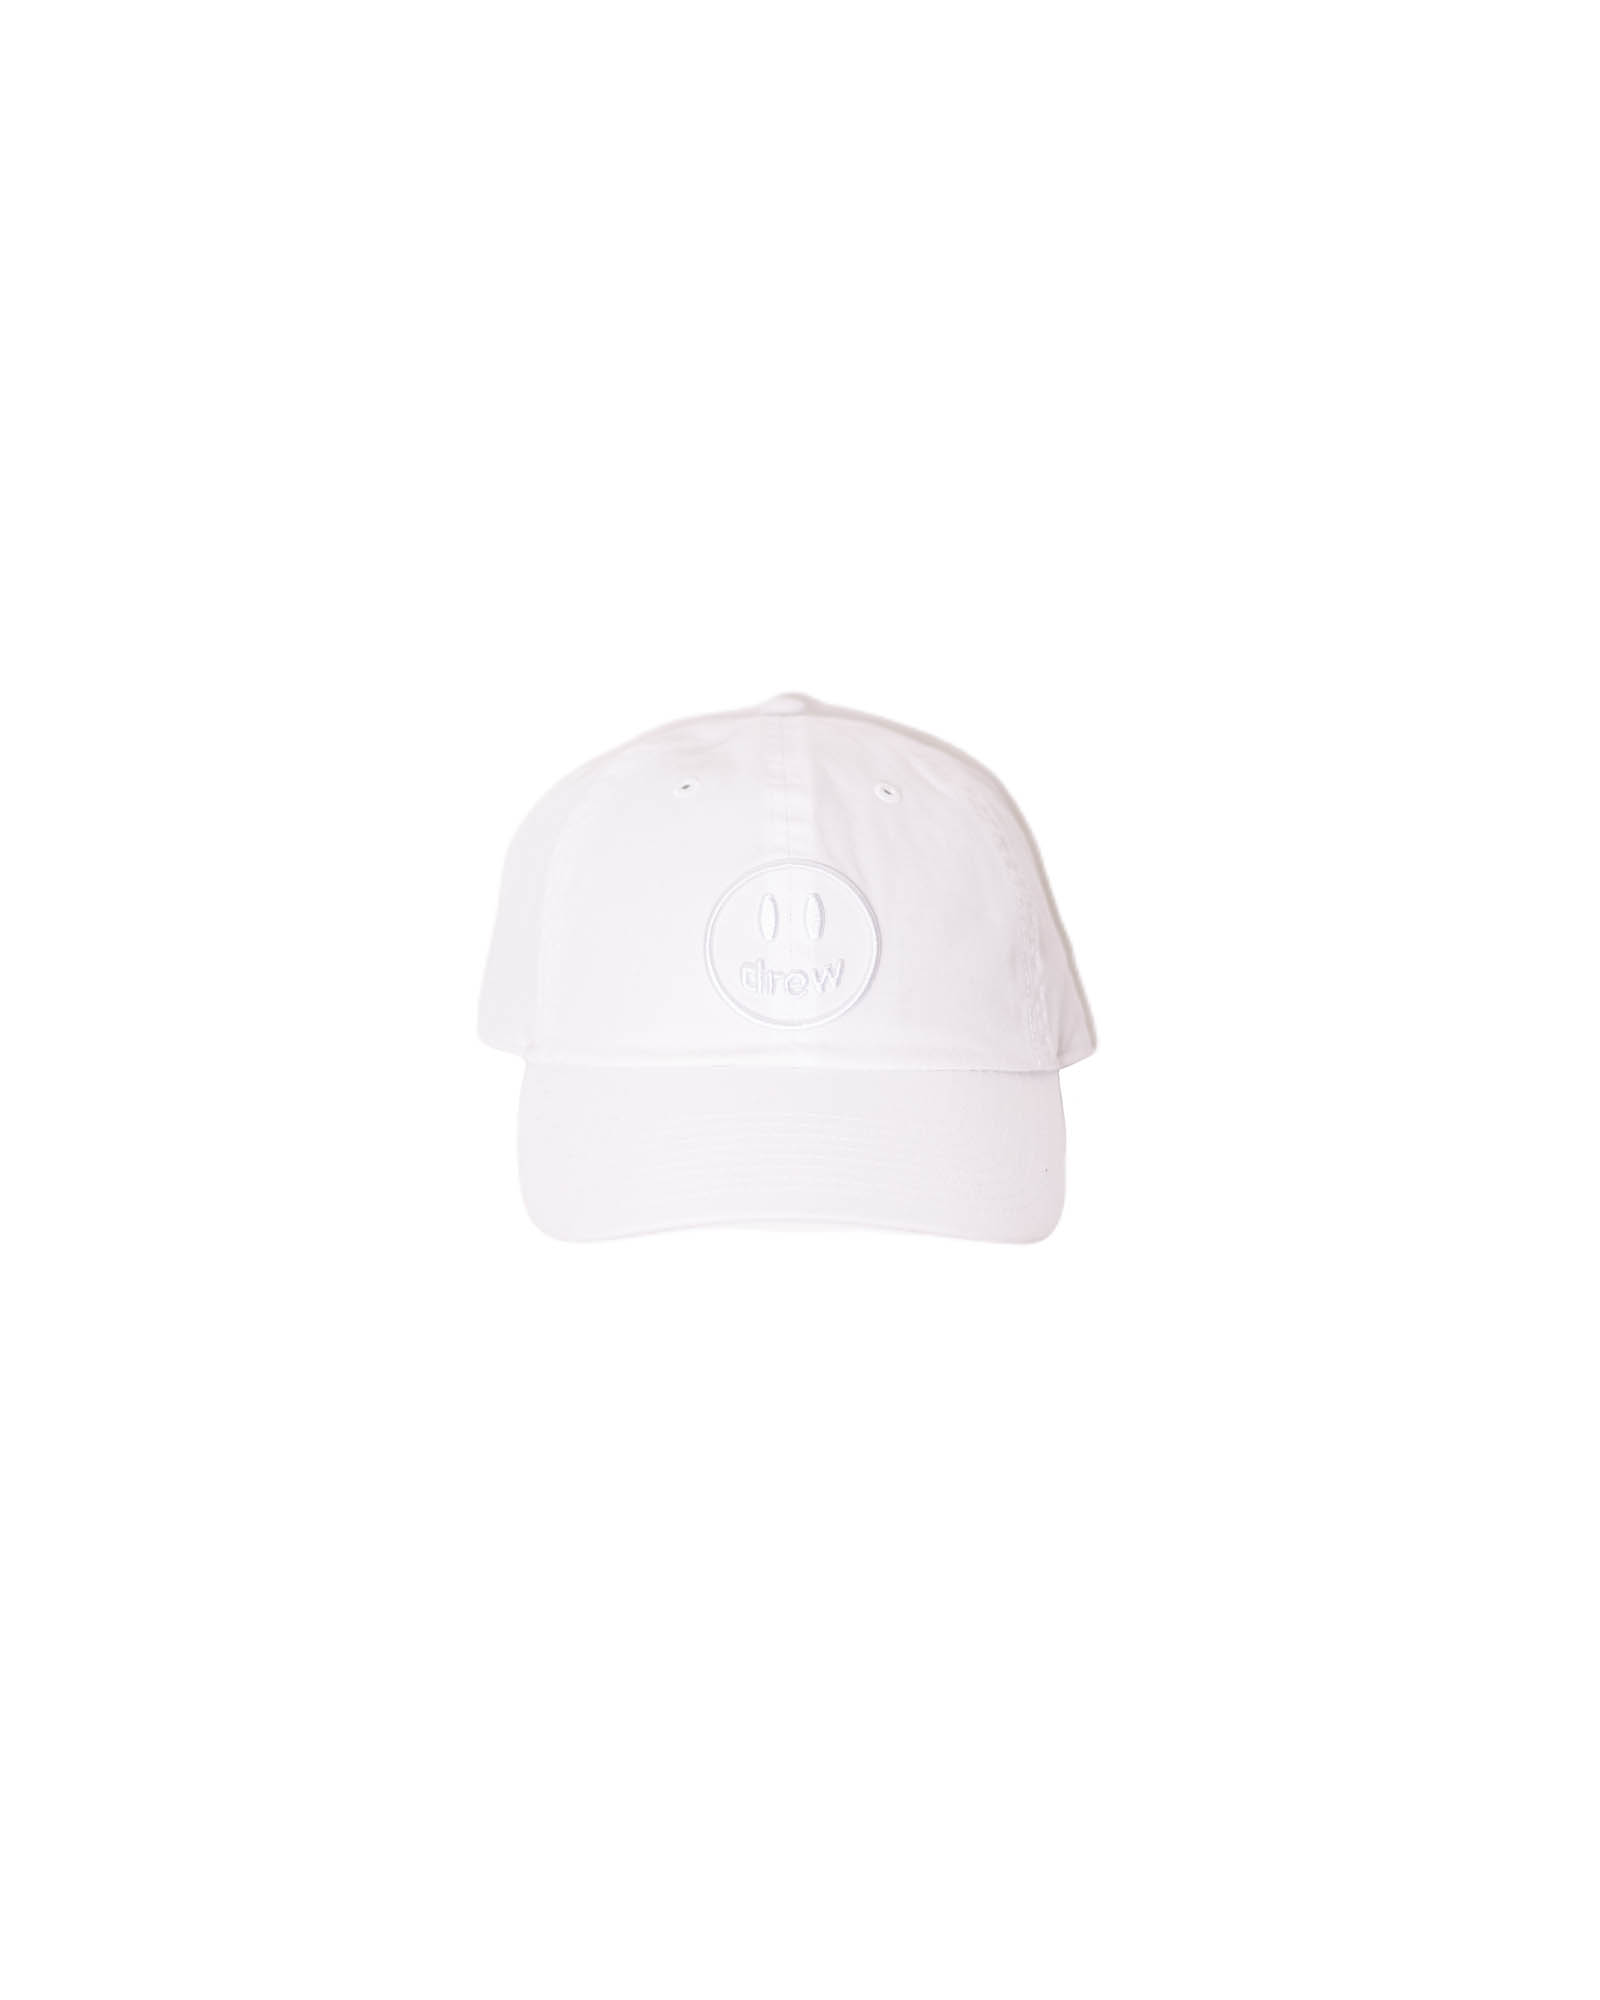 セール国産drew house mascot dad hat “white” キャップ キャップ